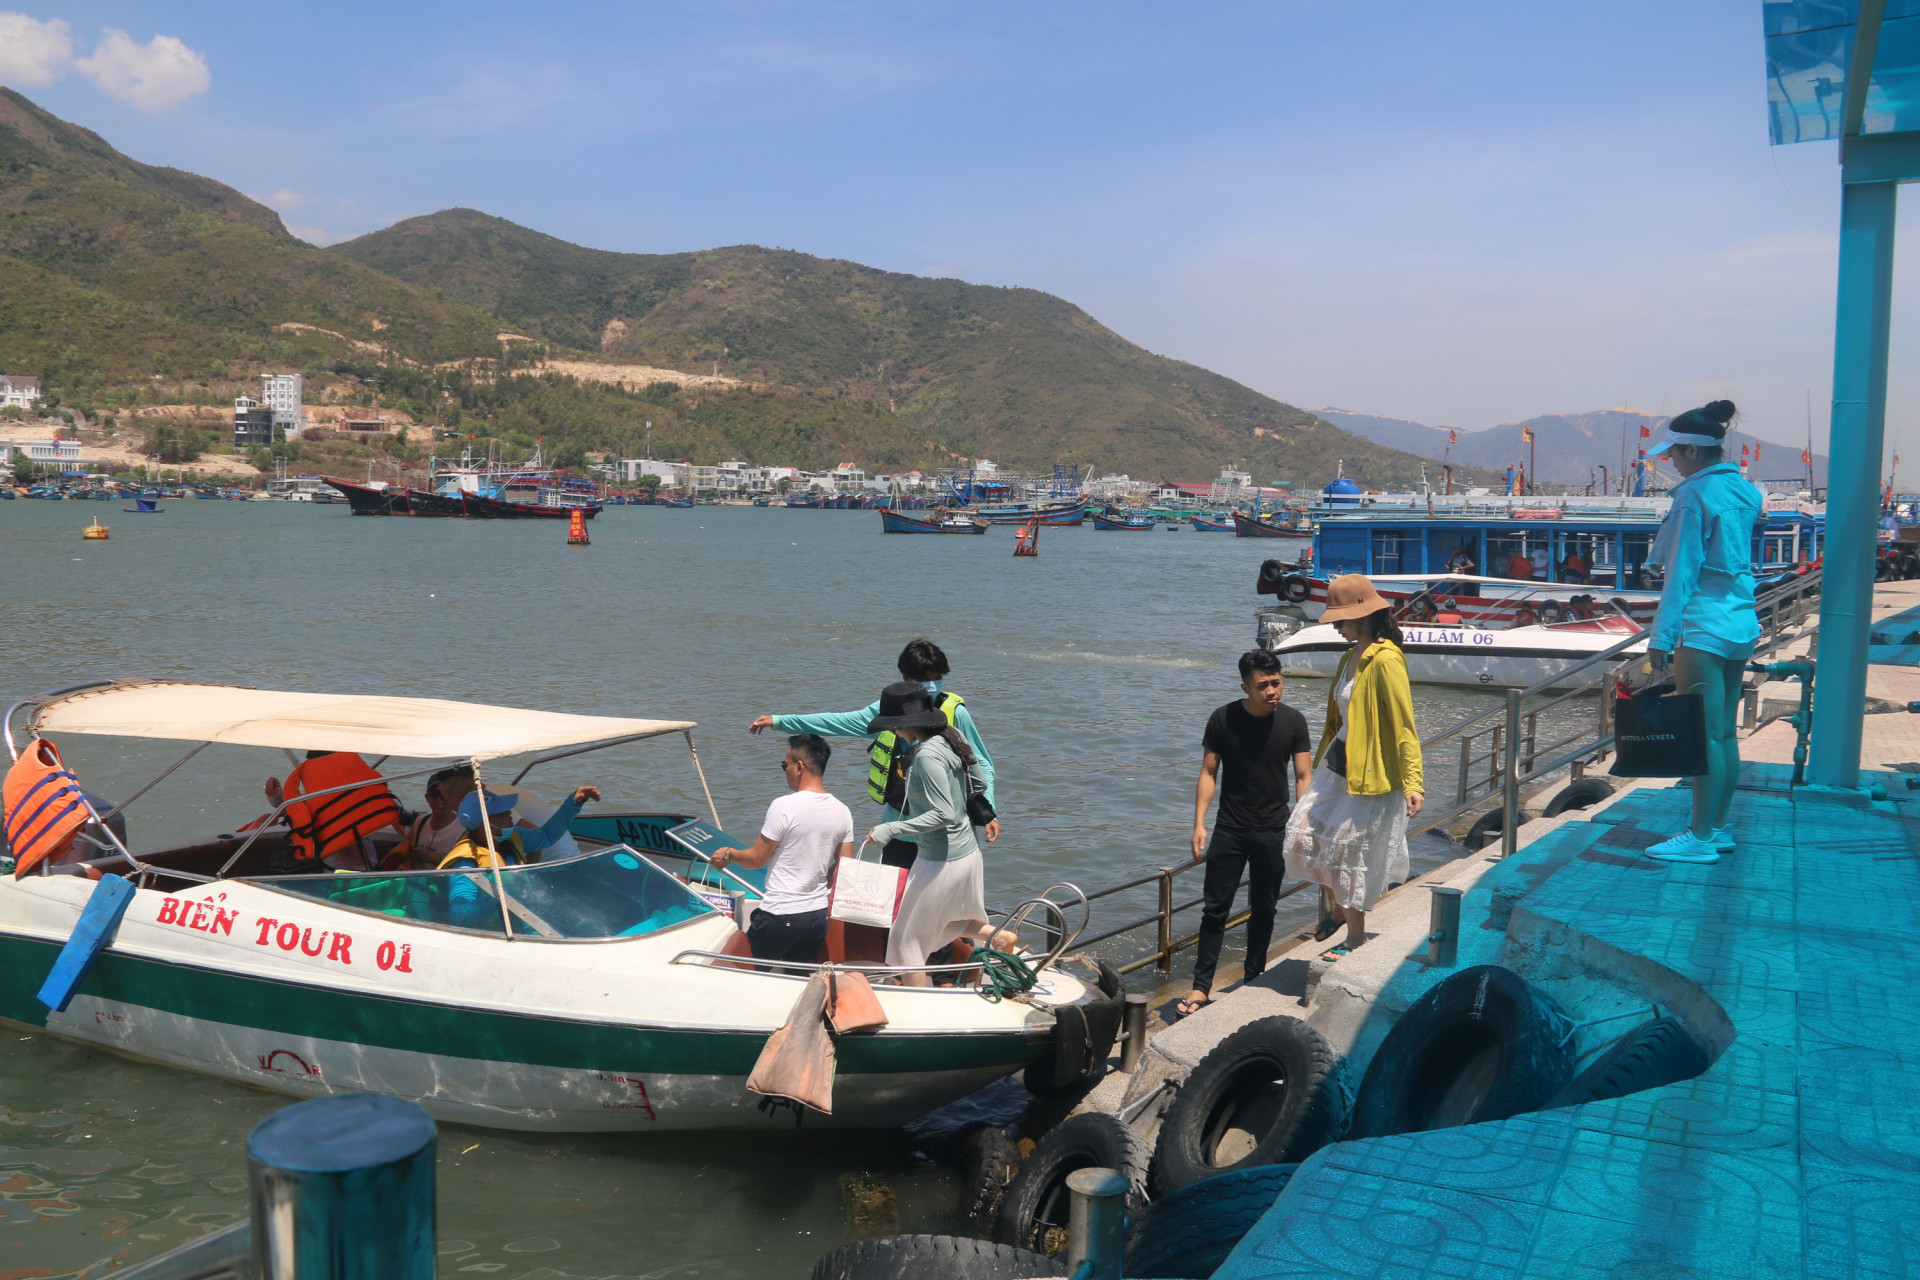 Nhiều đoàn khách hủy tour đến Nha Trang nên lượng khách đi tour biển đảo còn rất ít